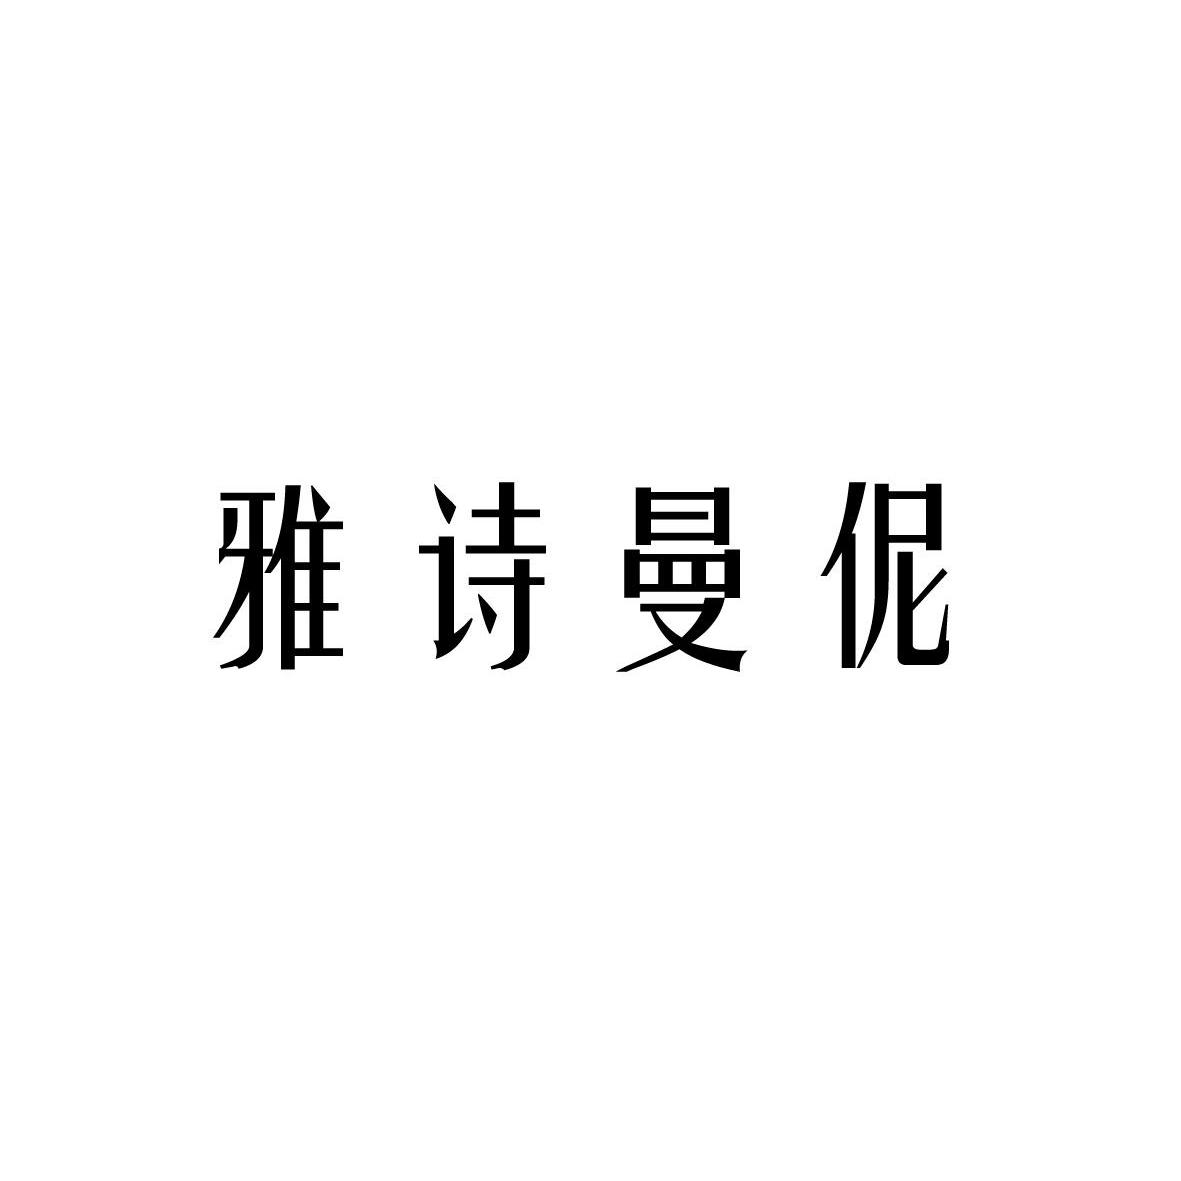 雅诗曼伲logo